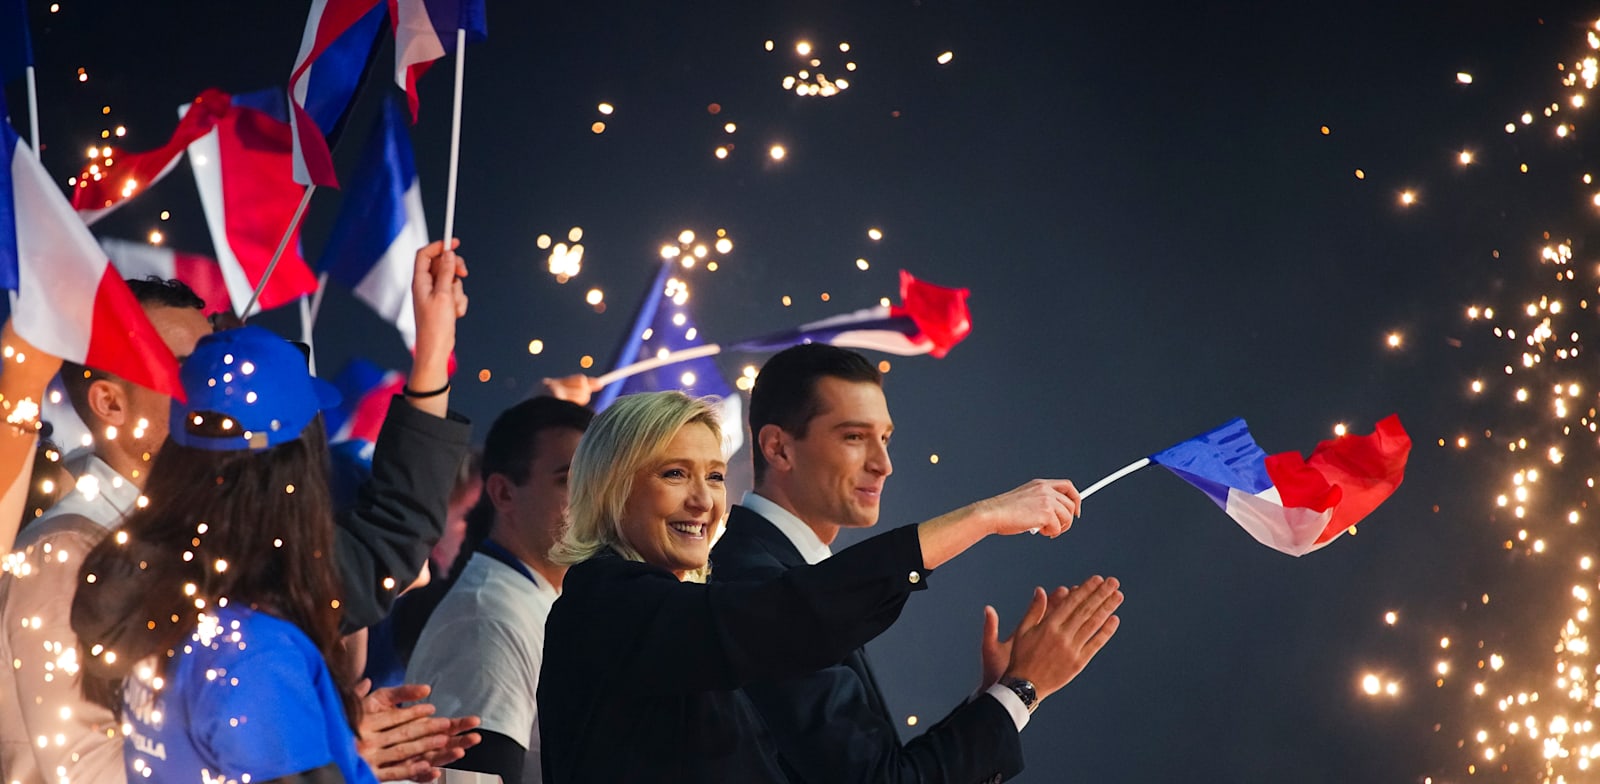 מרין לה-פן (משמאל) יו''ר מפלגת הימין הקיצוני בצרפת, וז'ורדן ברדלה, מועמד מפלגתה של לה-פן לראשות הממשלה, באירוע תמיכה / צילום: ap, Daniel Cole